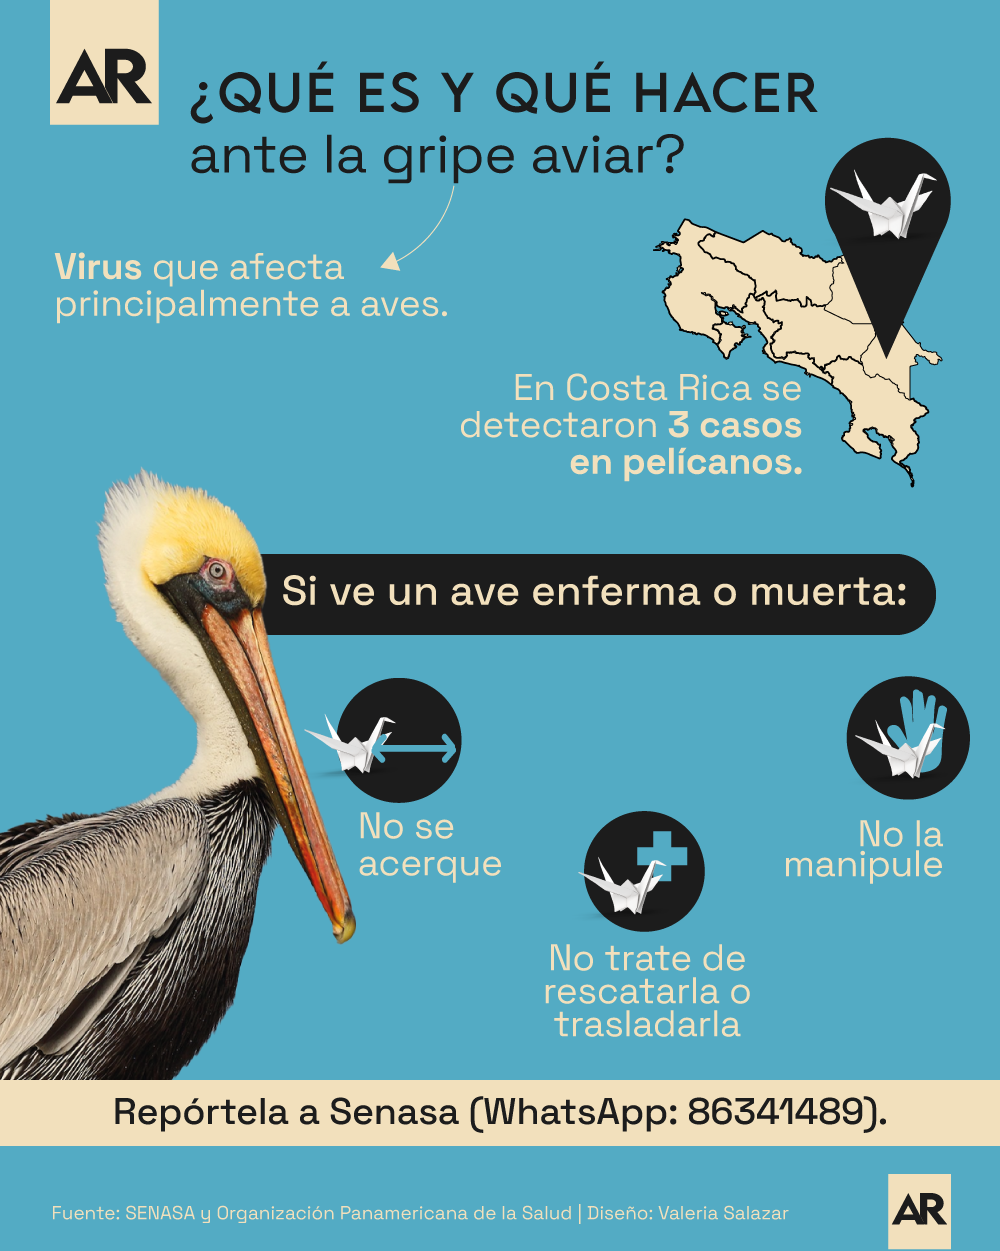 Influenza,Virus,Aves,CostaRica